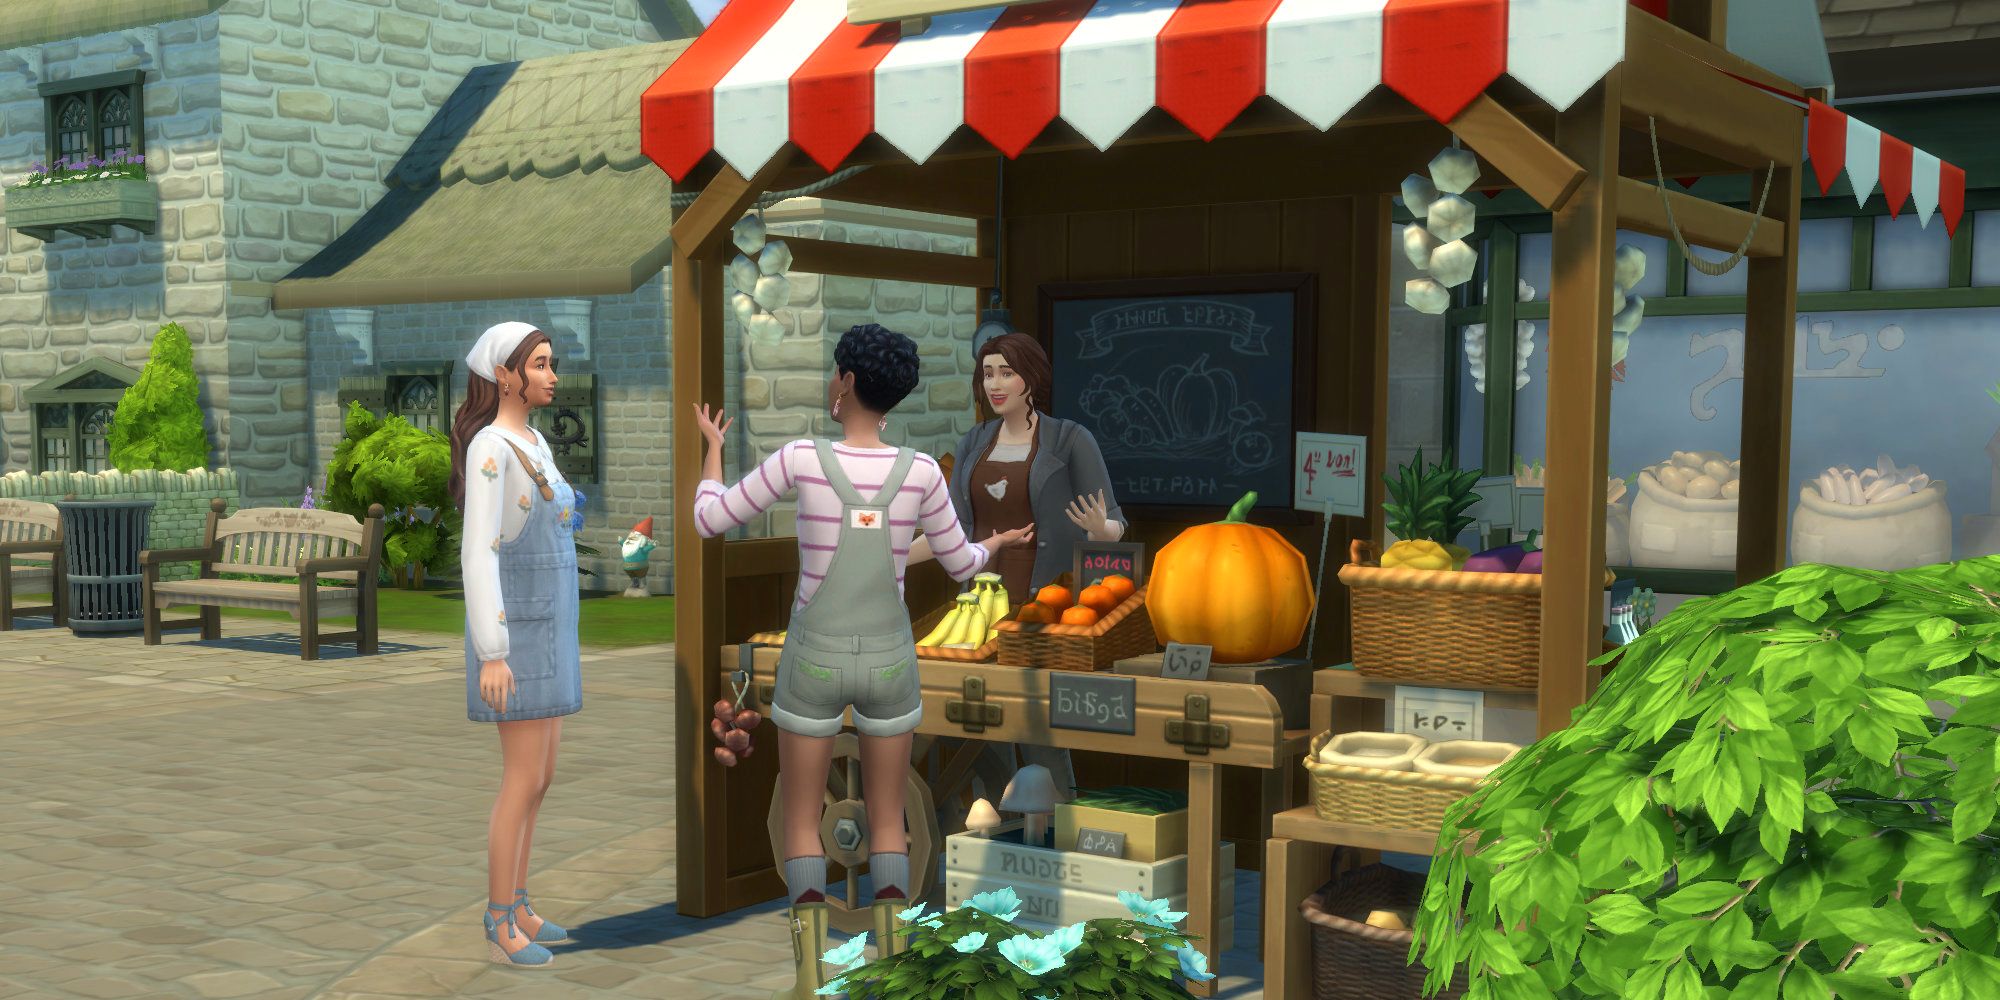 Sims 4 Chatka w sklepie spożywczym na czacie